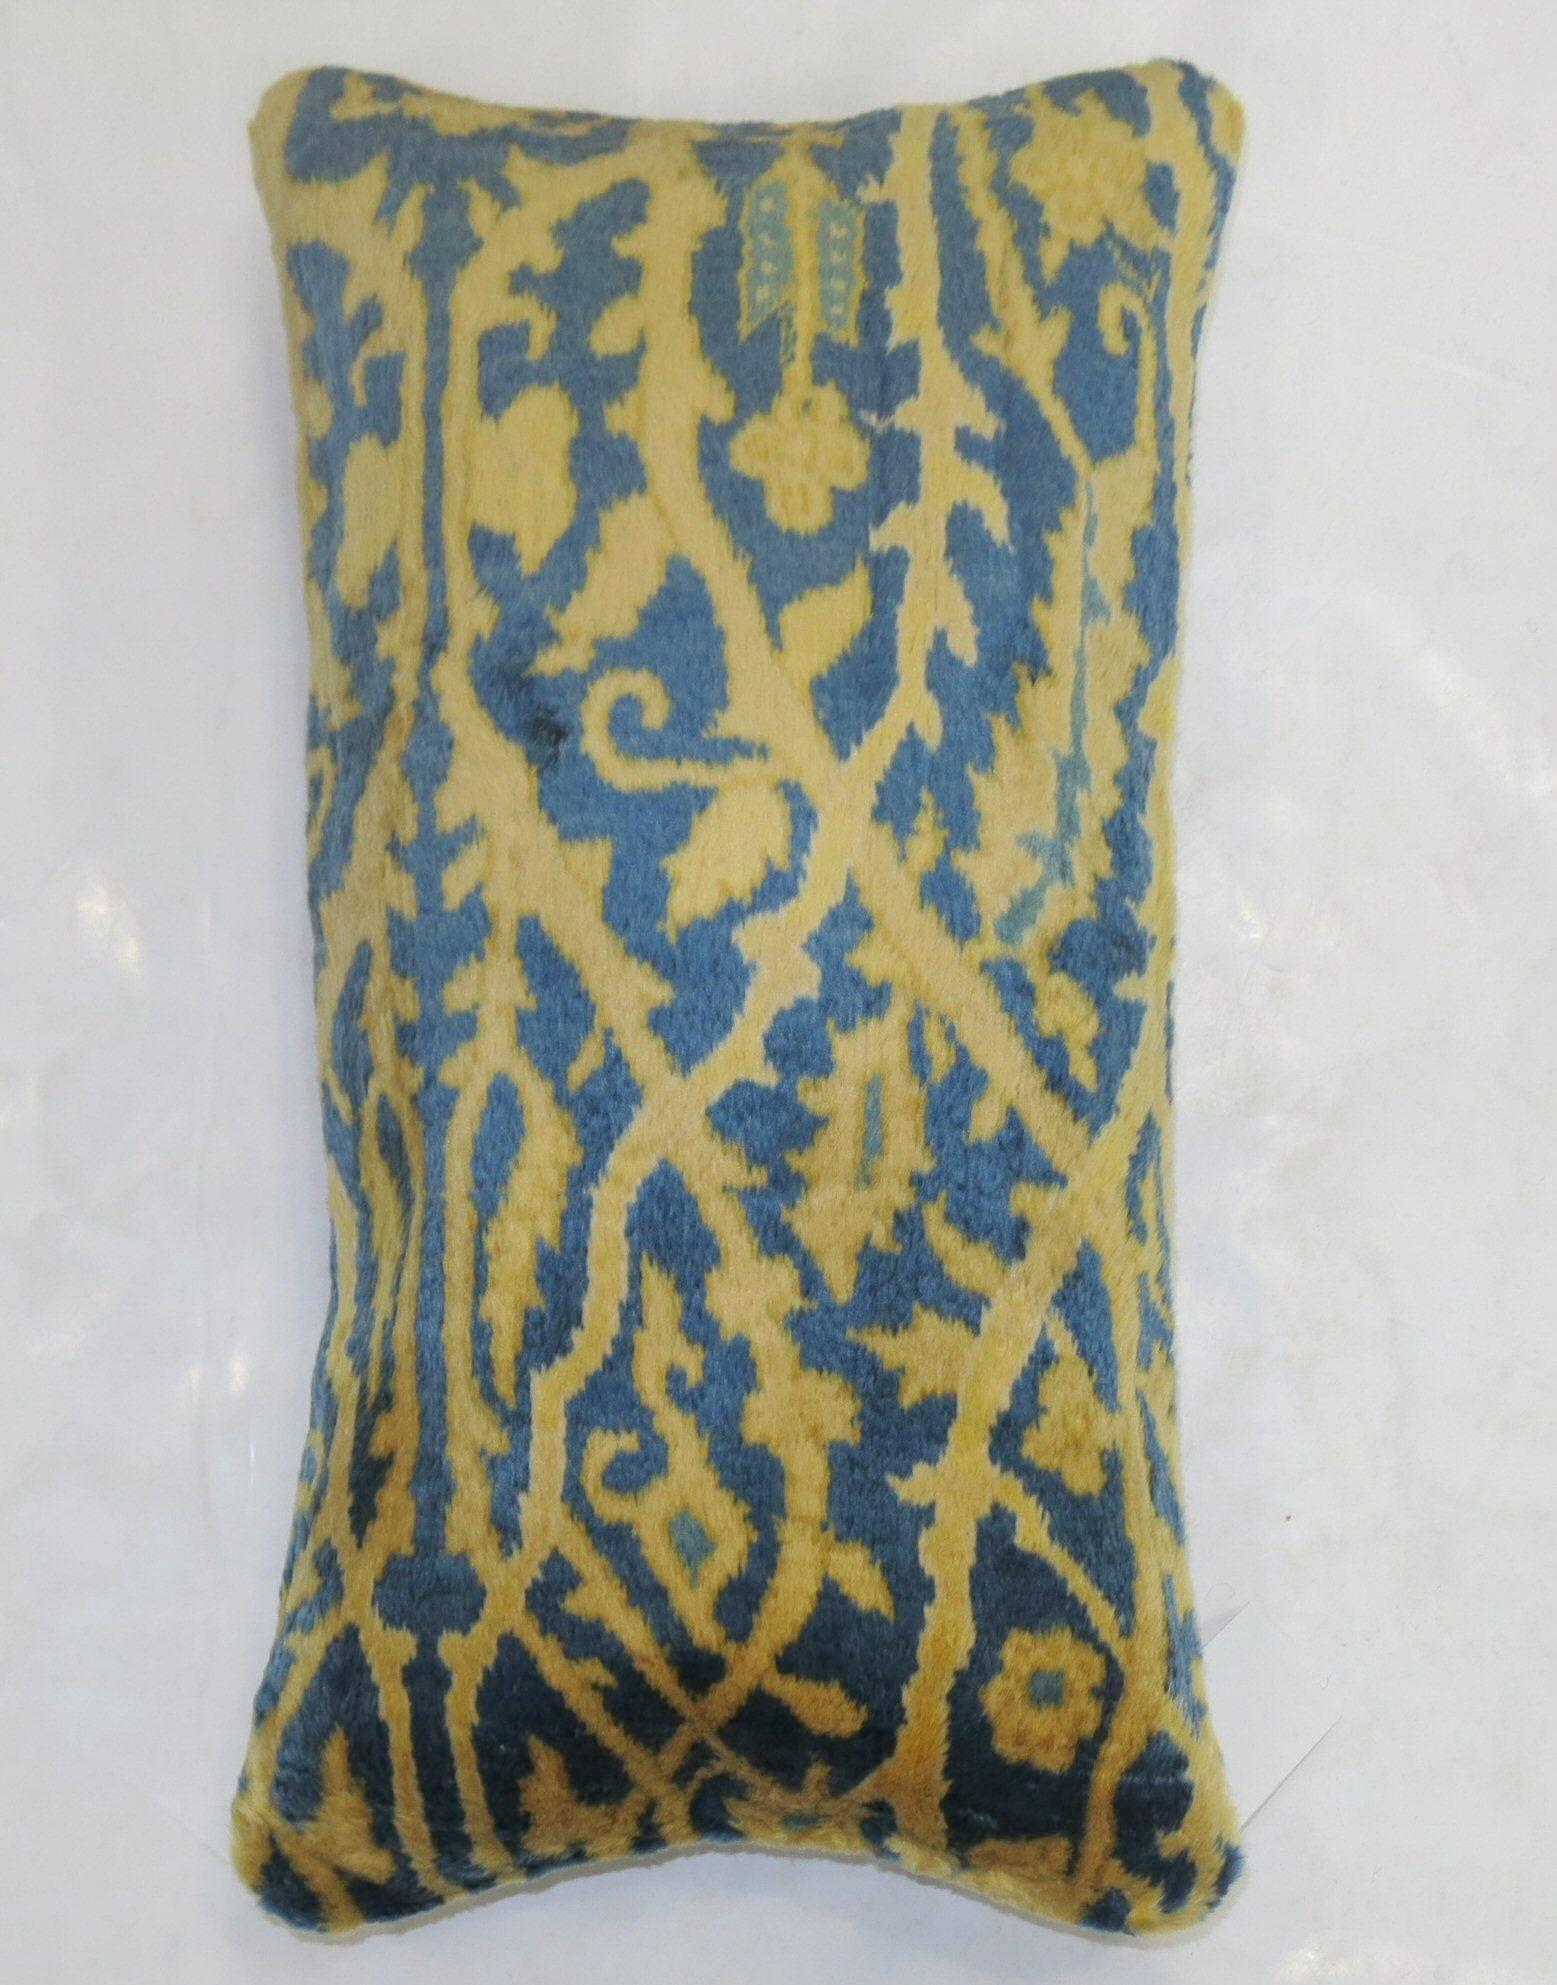 Coussin réalisé à partir d'un tapis indien larestan du XXe siècle, à la laine soyeuse, dans des tons bleus et or.

Mesures : 14'' x 24''.